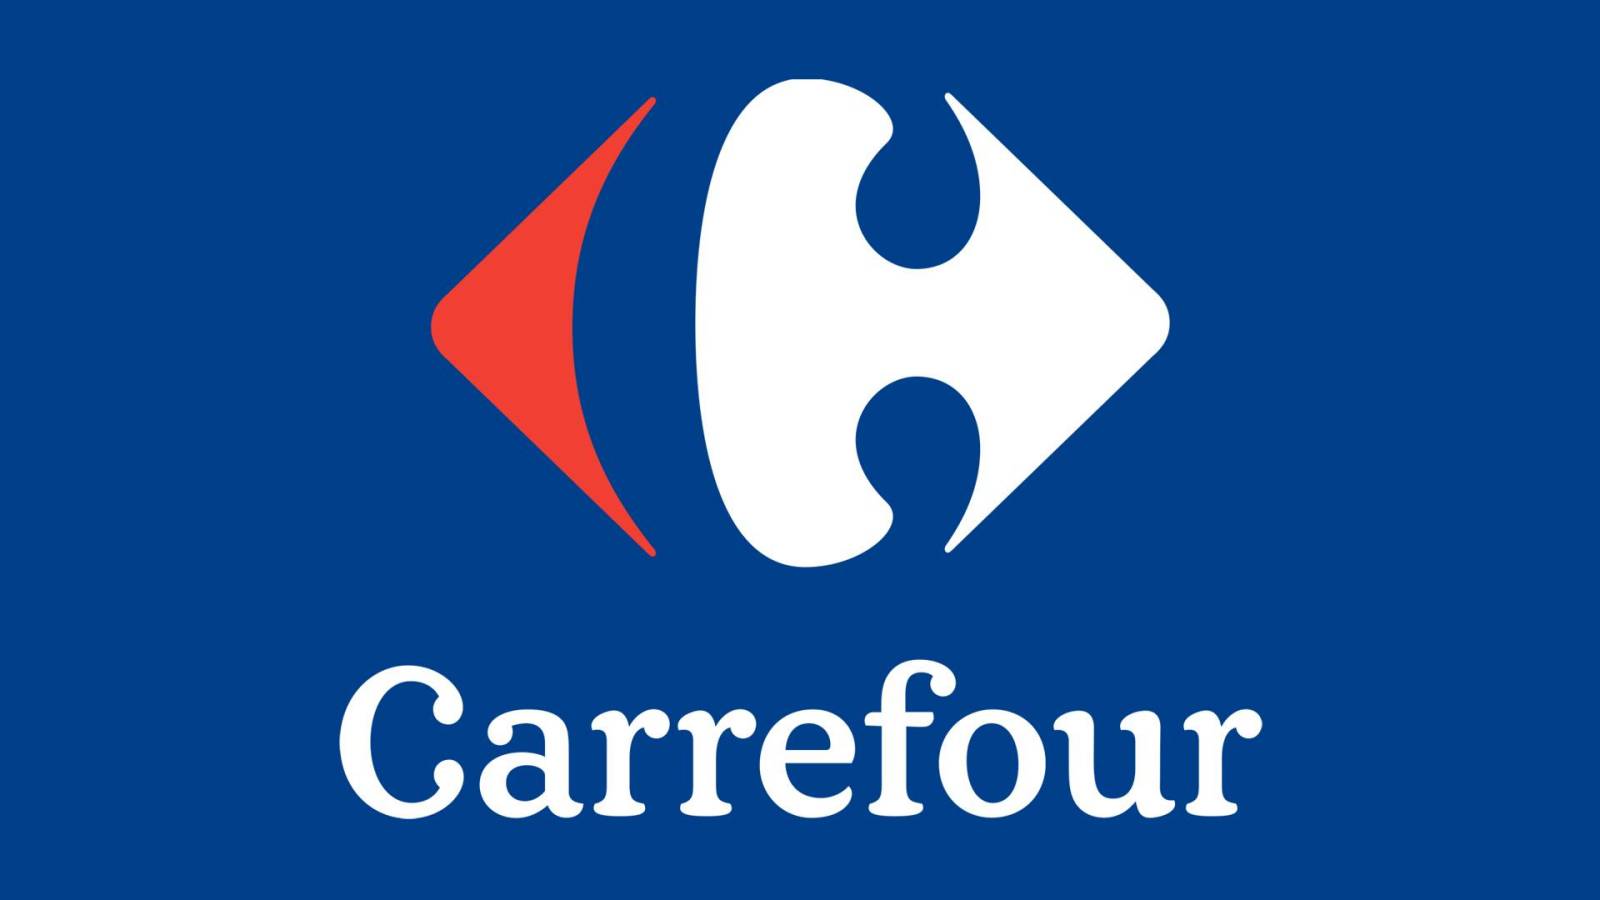 Carrefour WICHTIGE KOSTENLOSE ENTSCHEIDUNG für Rumänen im ganzen Land